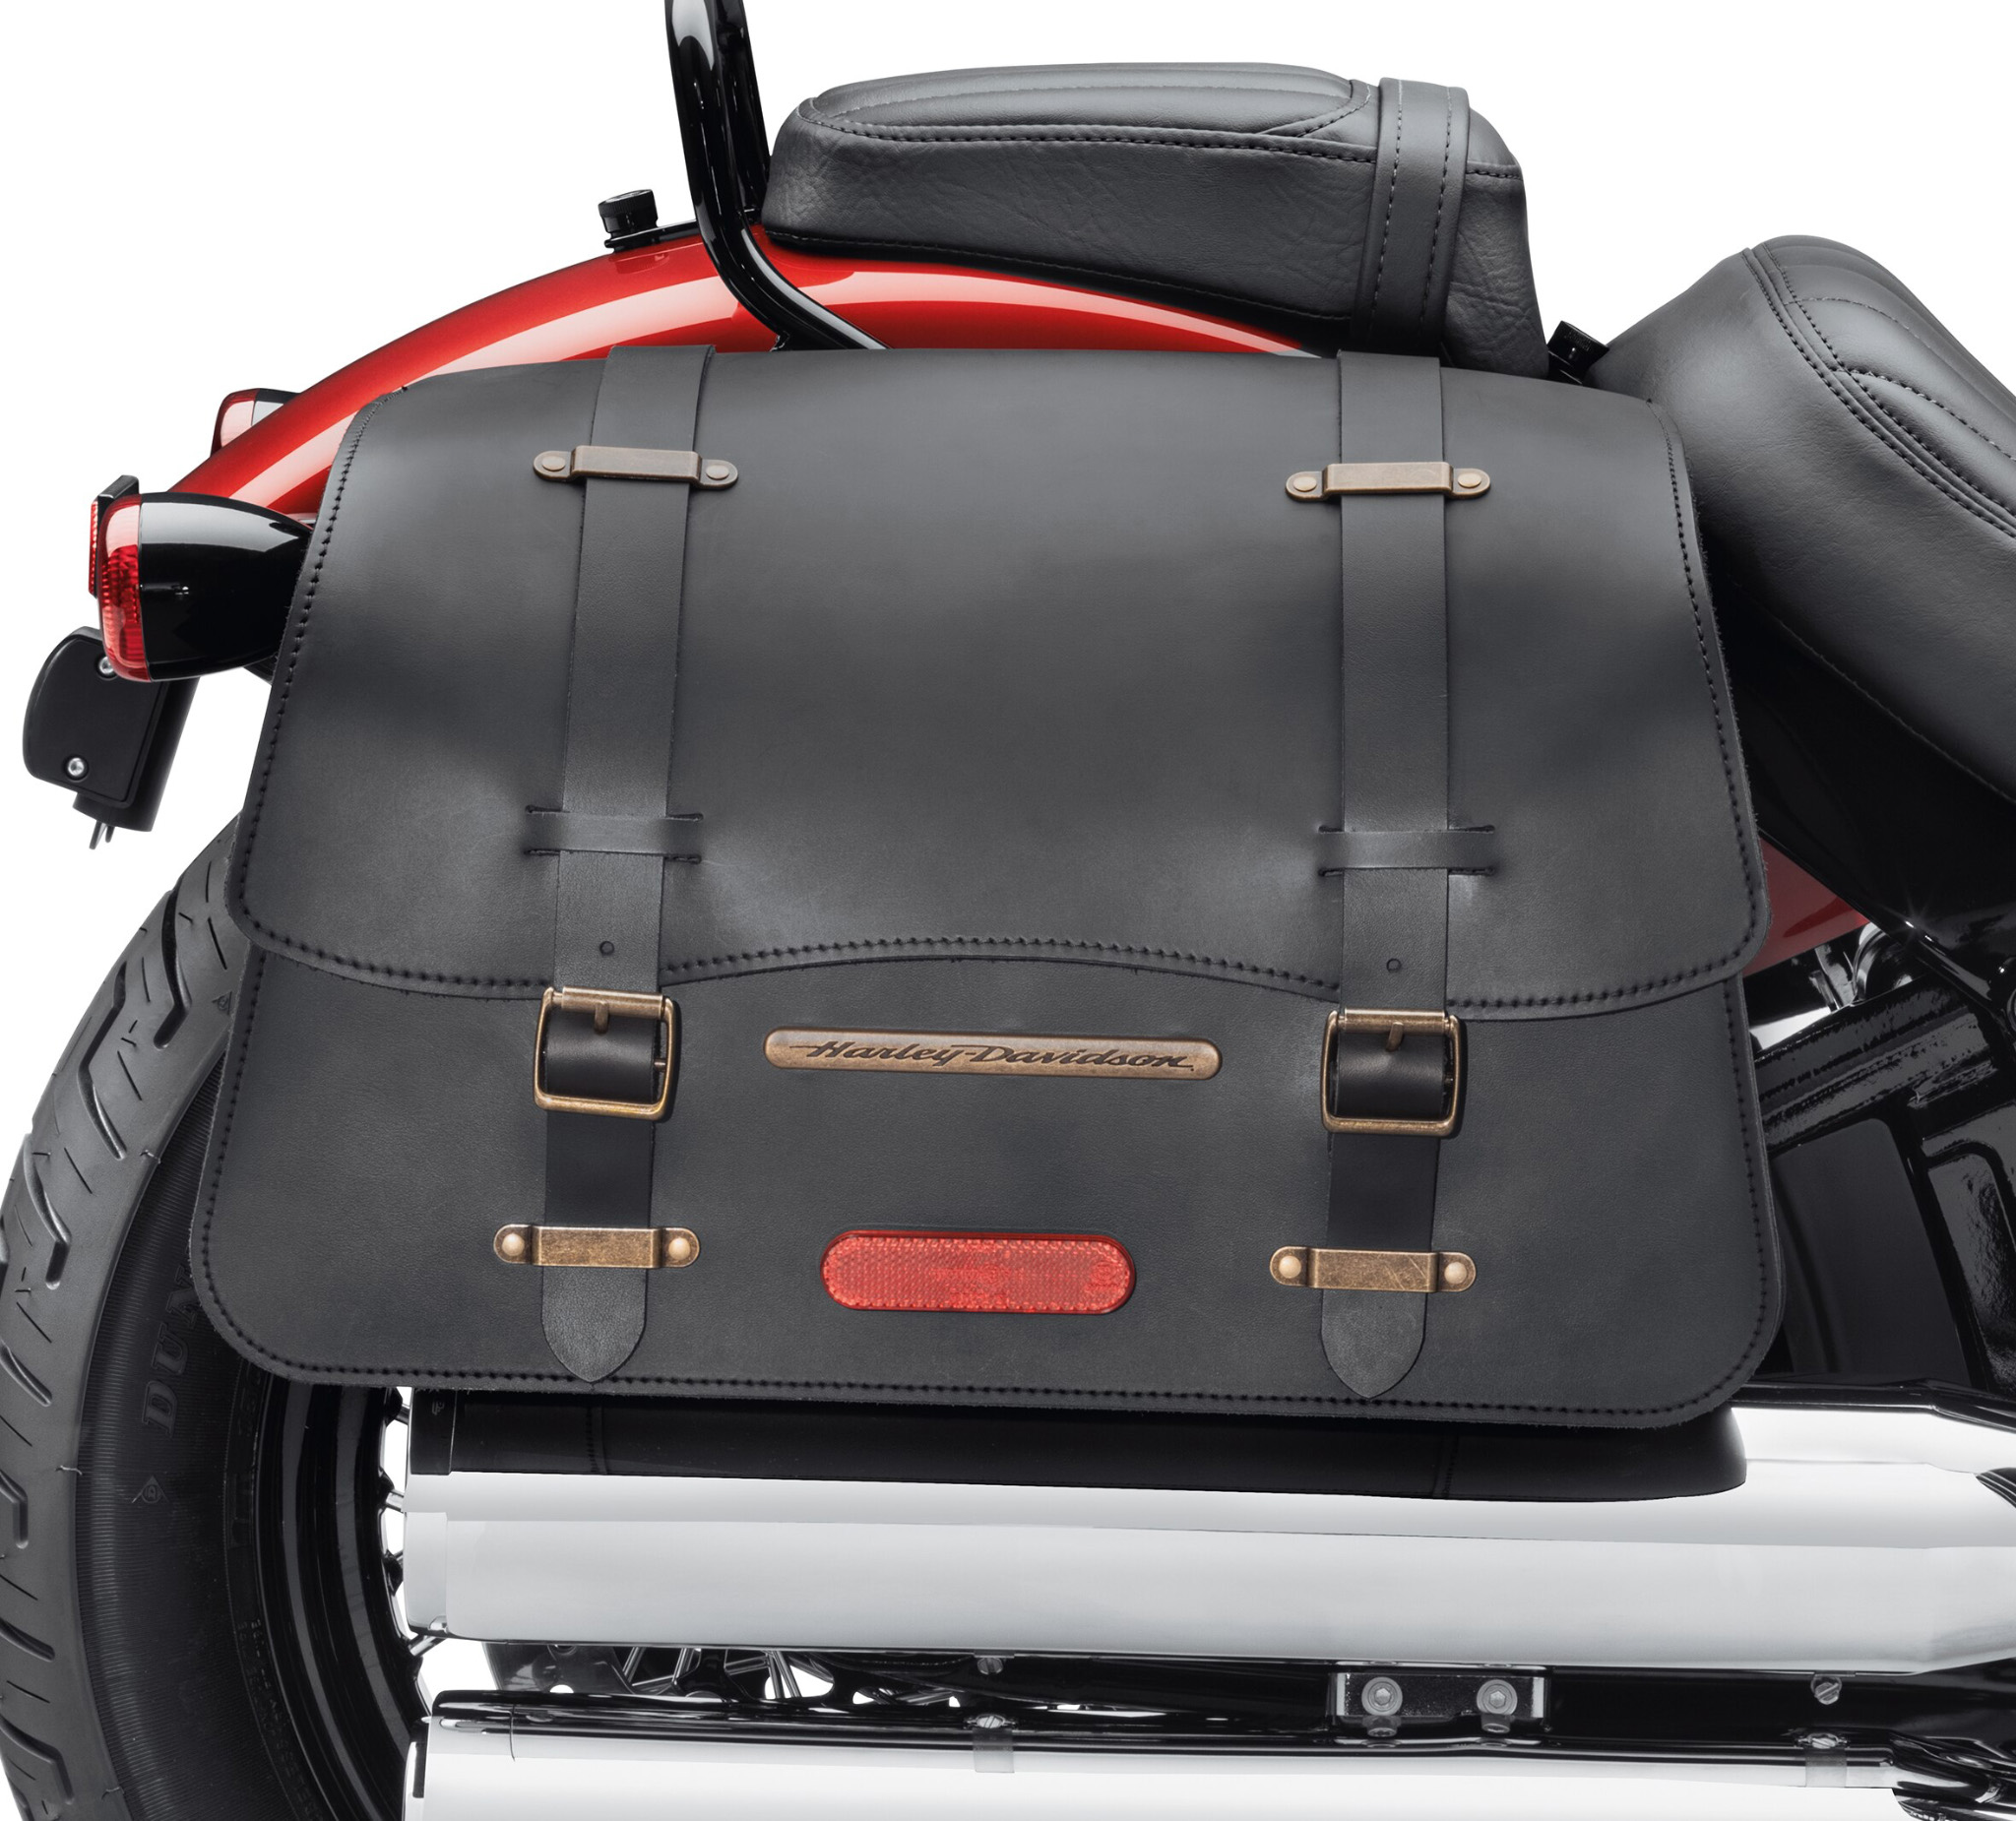 Alforjas custom / saddlebags 